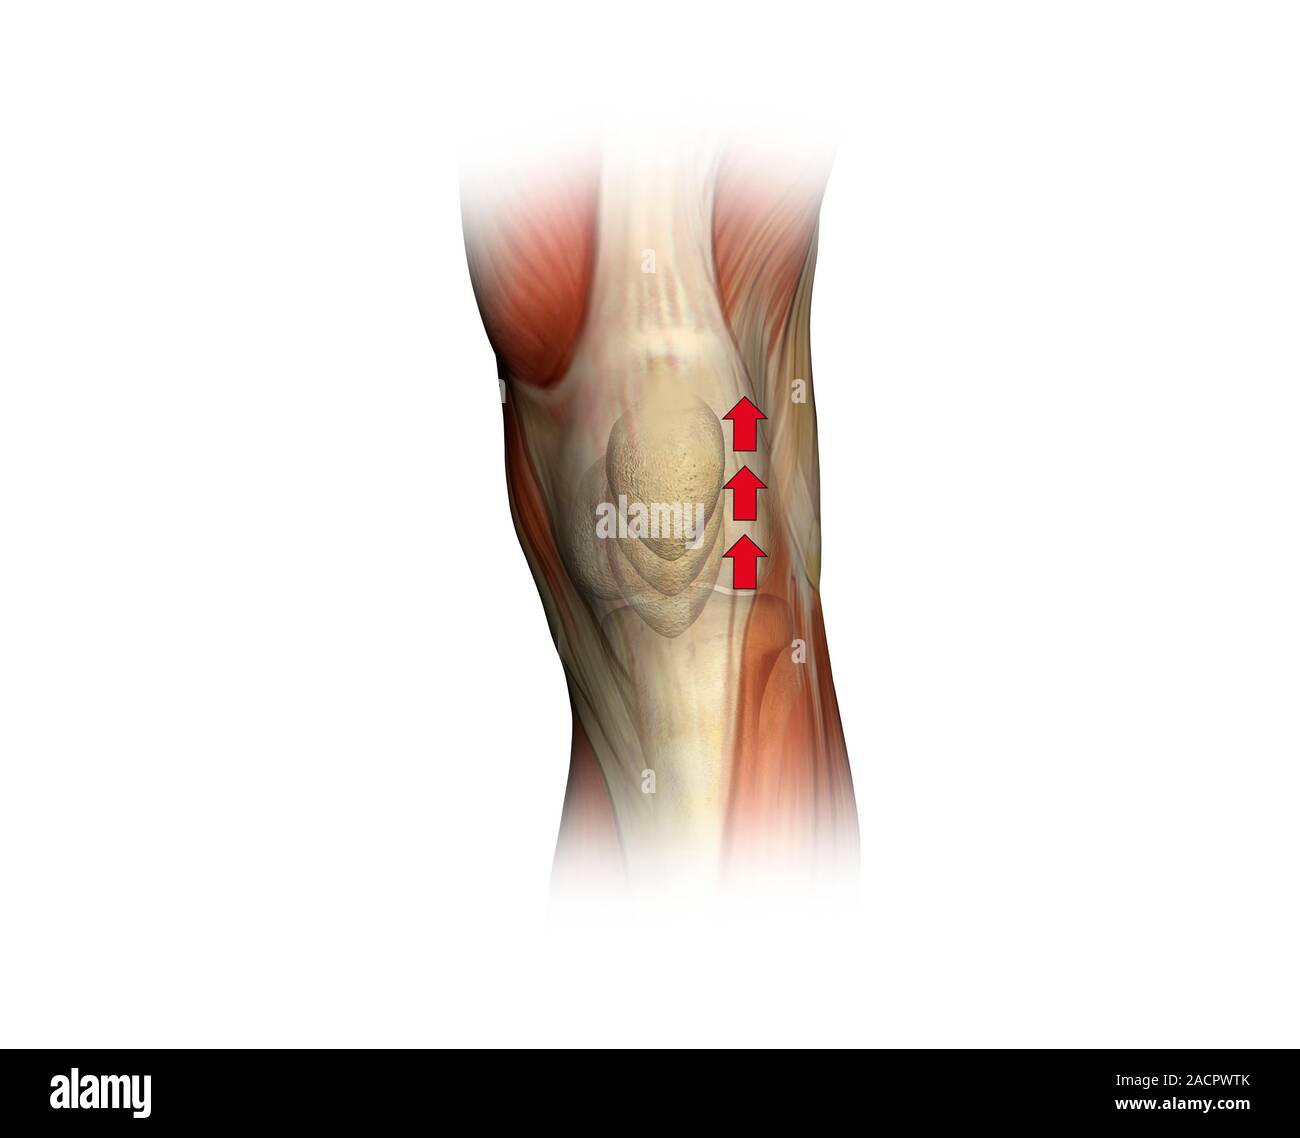 Patella zucken. Artwork der Muskeln des Knies von der Front, die mit einem roten Pfeil zeigt die Richtung der Bewegung der Kniescheibe (Patella), wenn Th Stockfoto